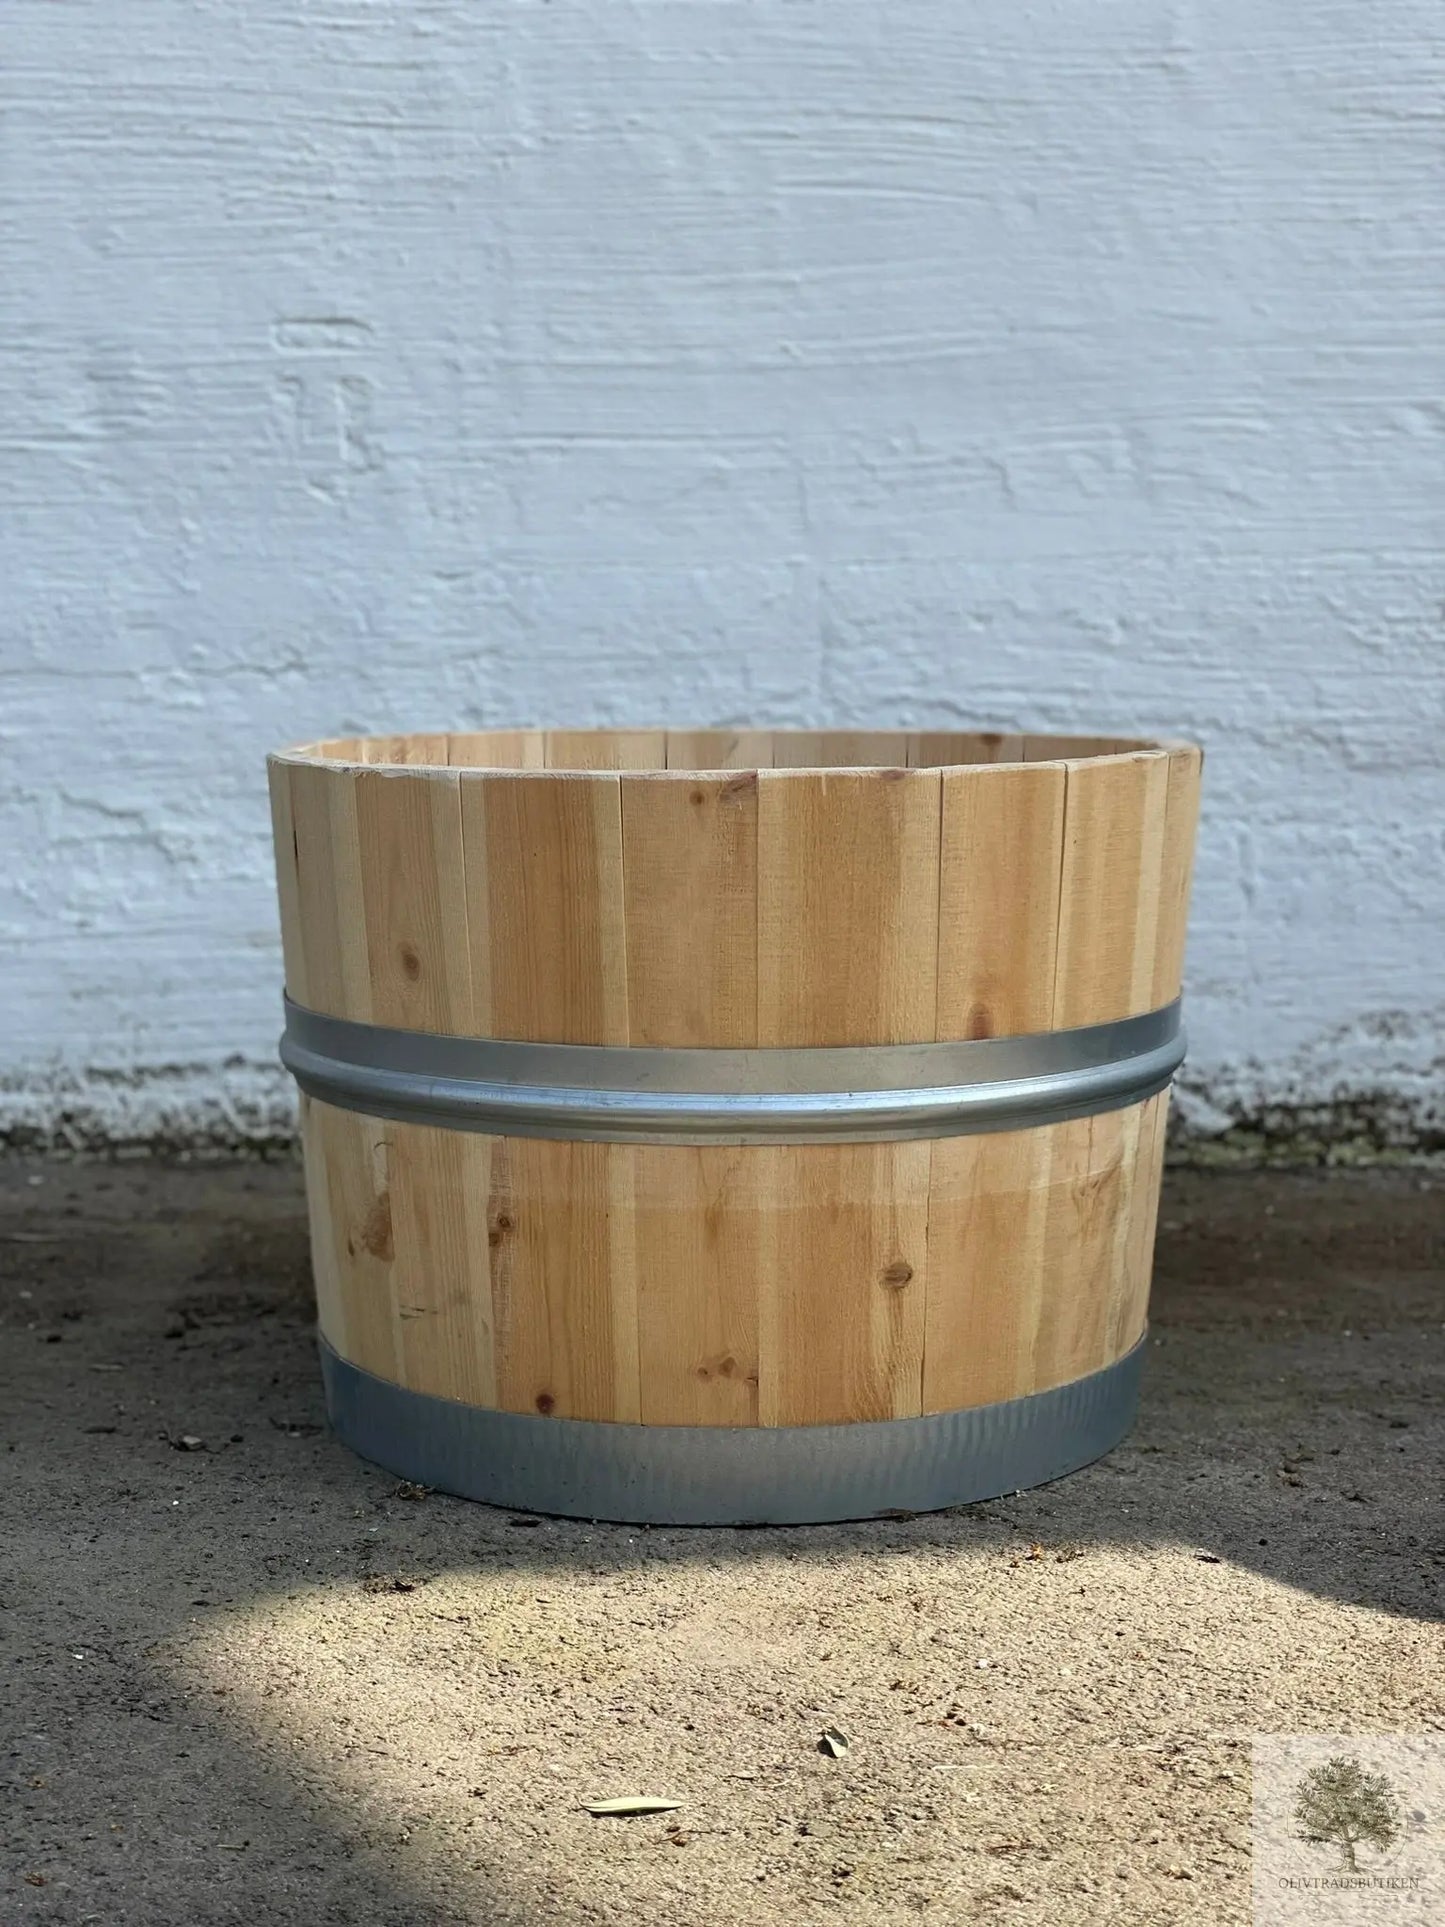 Halv trätunna i furu - Höjd 38 cm diameter 52 cm Olivträdsbutiken